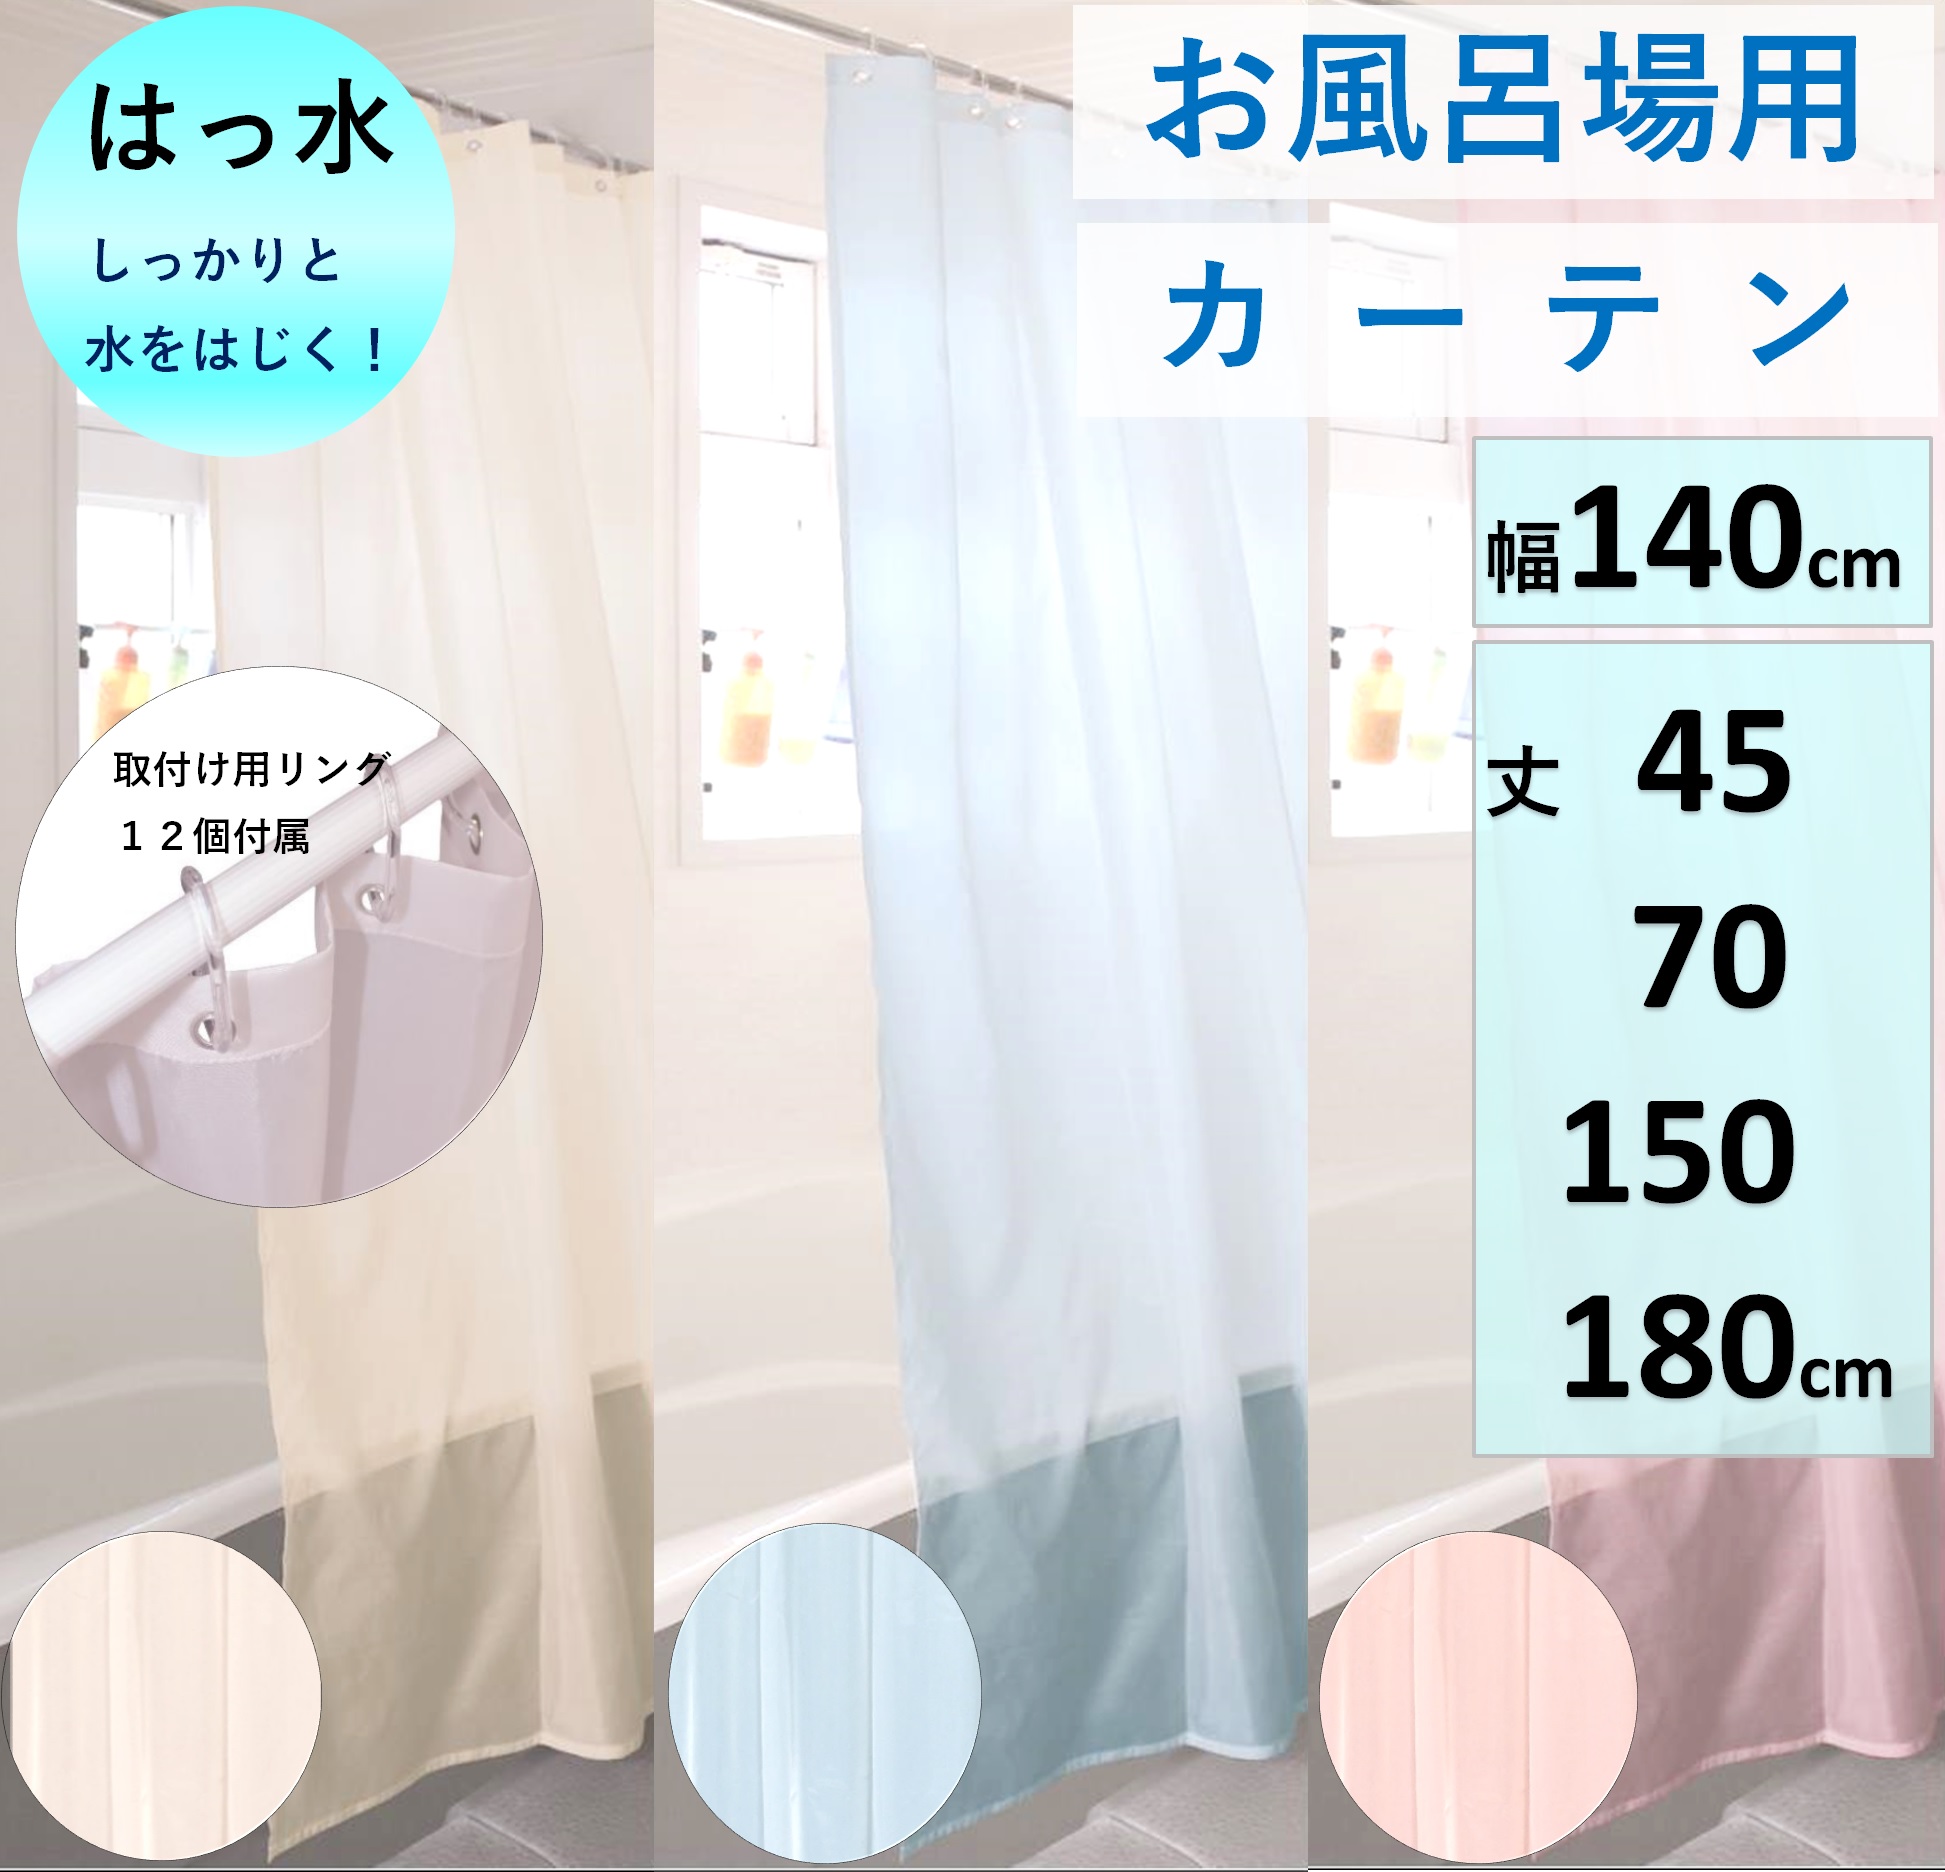 シャワーカーテン 150×180